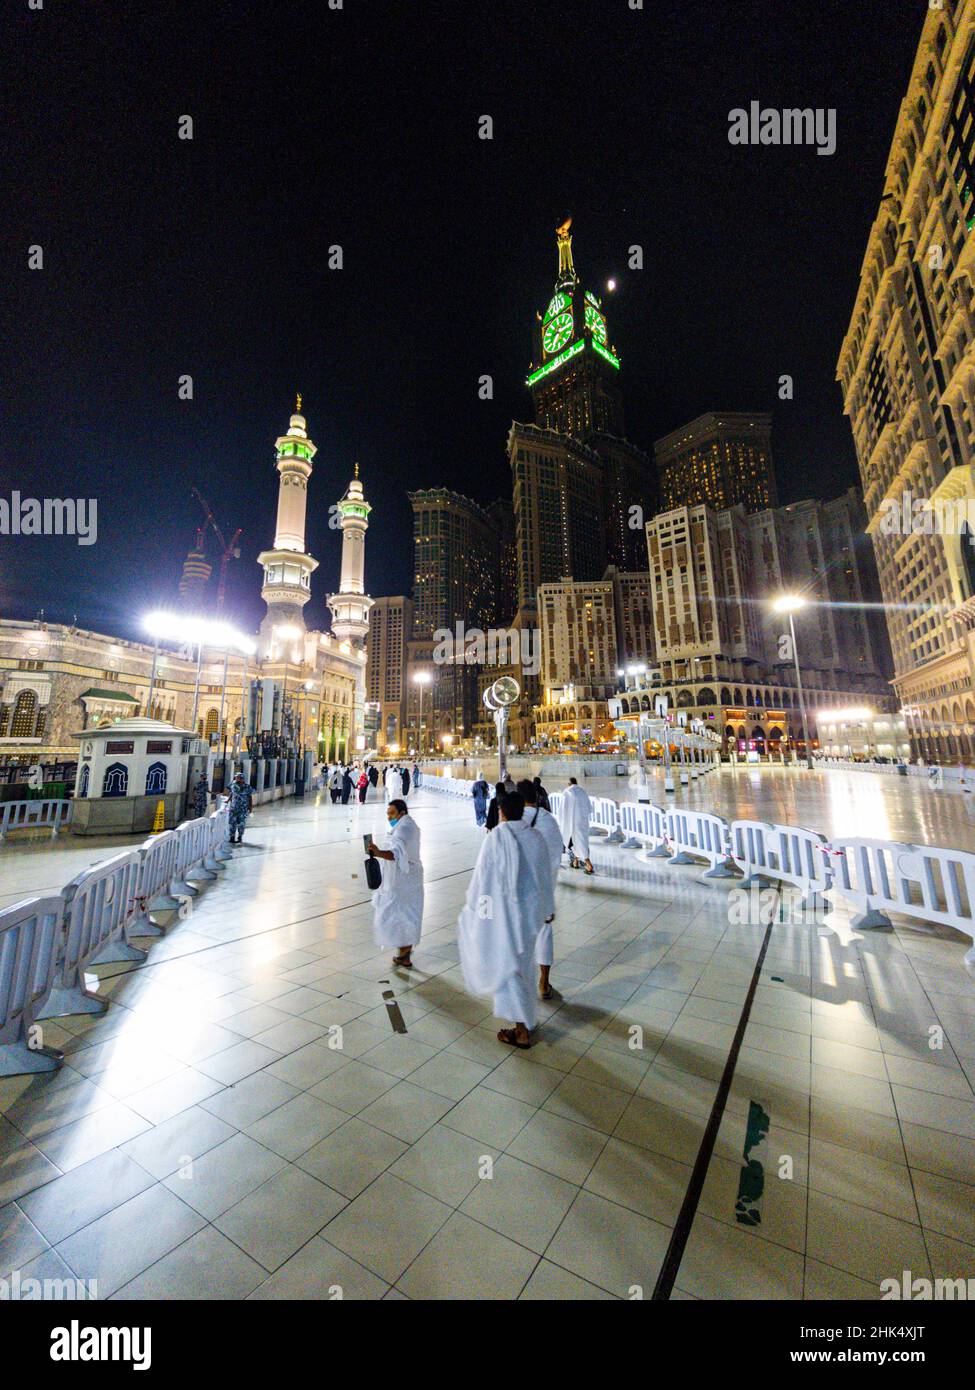 Mekka (la Mecque), Royaume d'Arabie saoudite, Moyen-Orient Banque D'Images